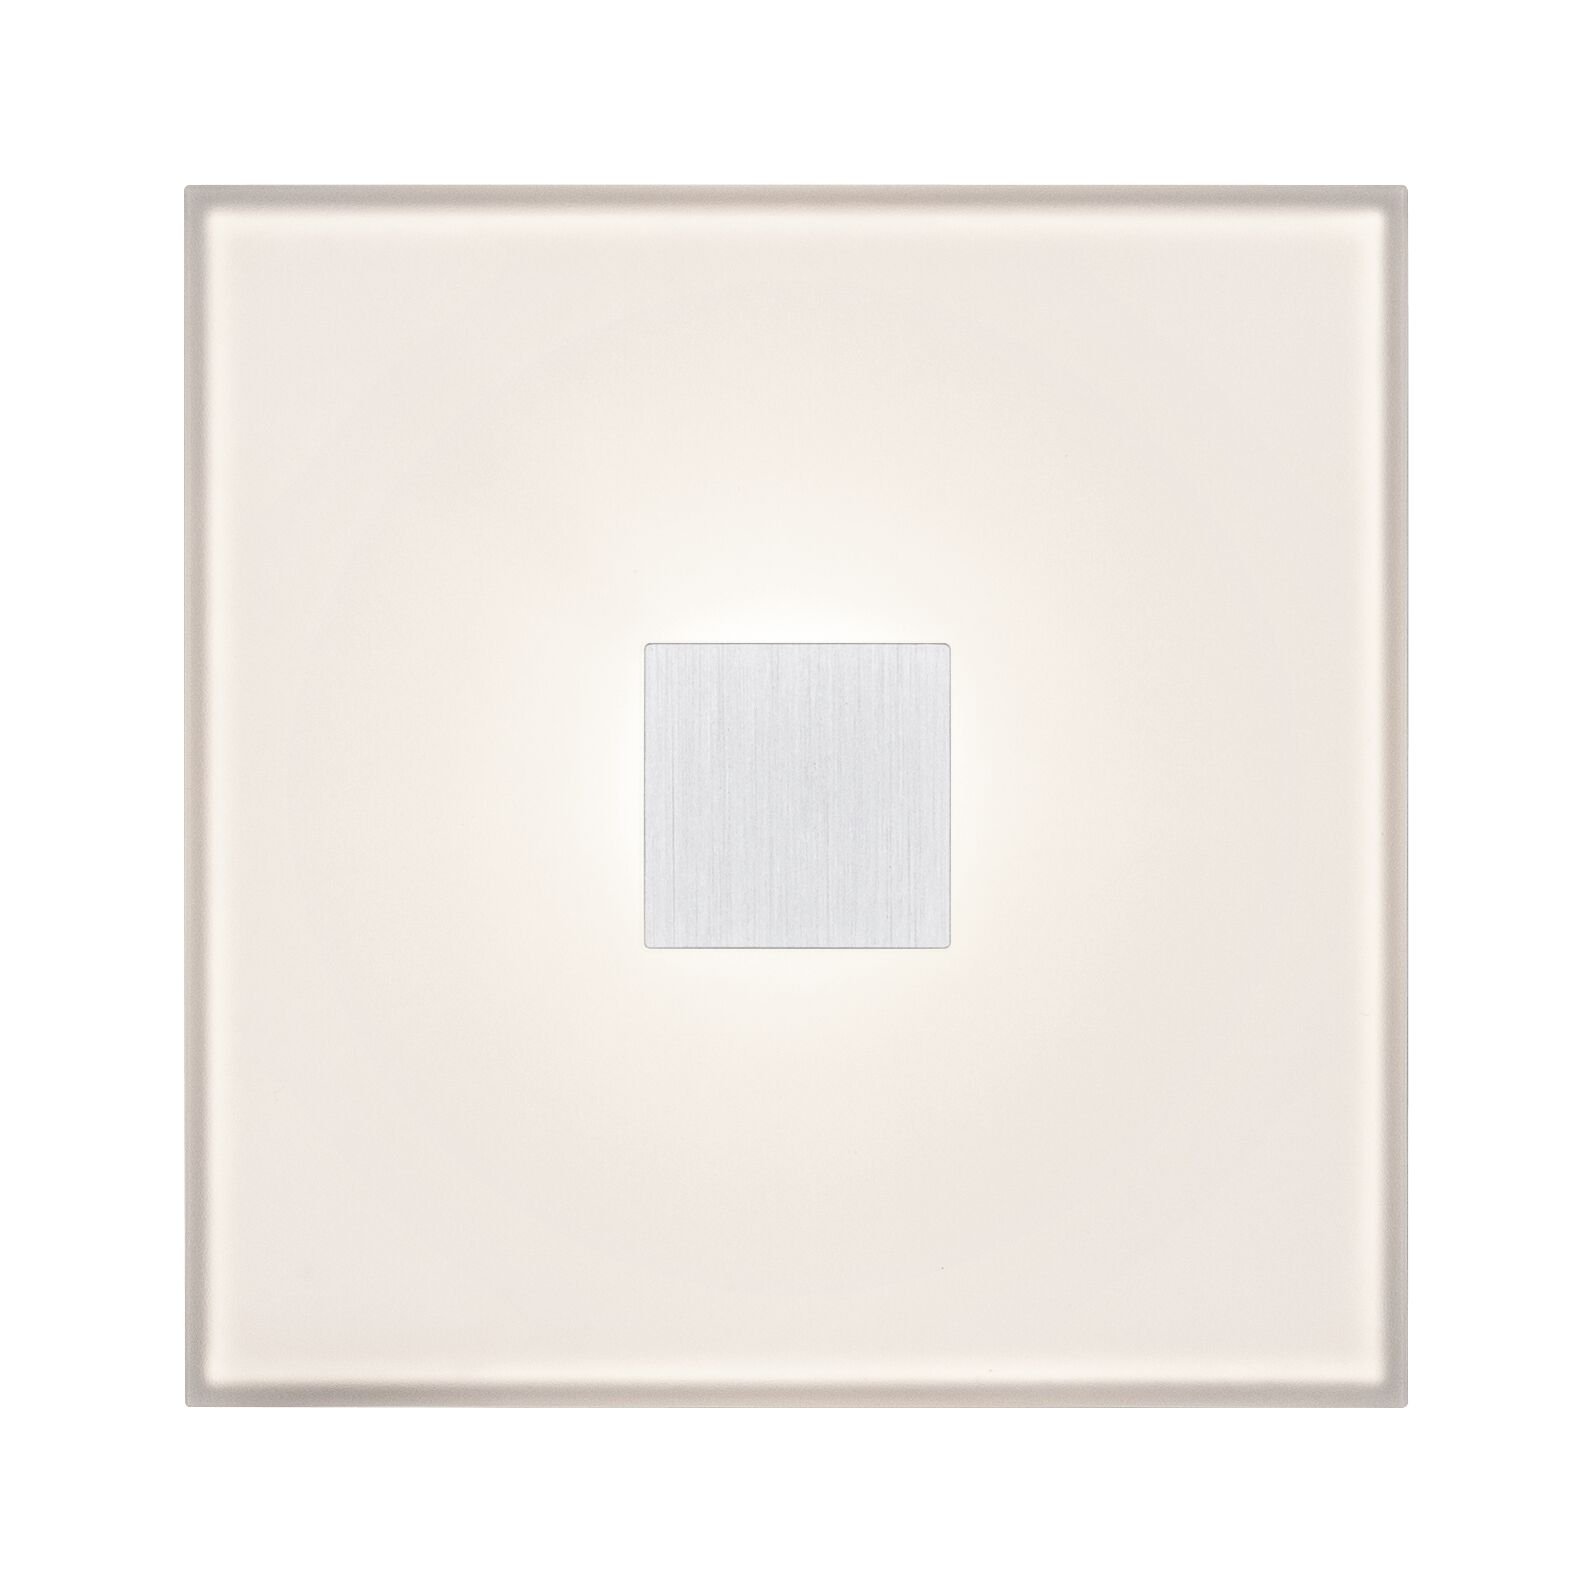 LumiTiles LED Tiles Square Single tile IP44 100x10mm 12lm 12V 0,75W RGBW White Plastic/Aluminium